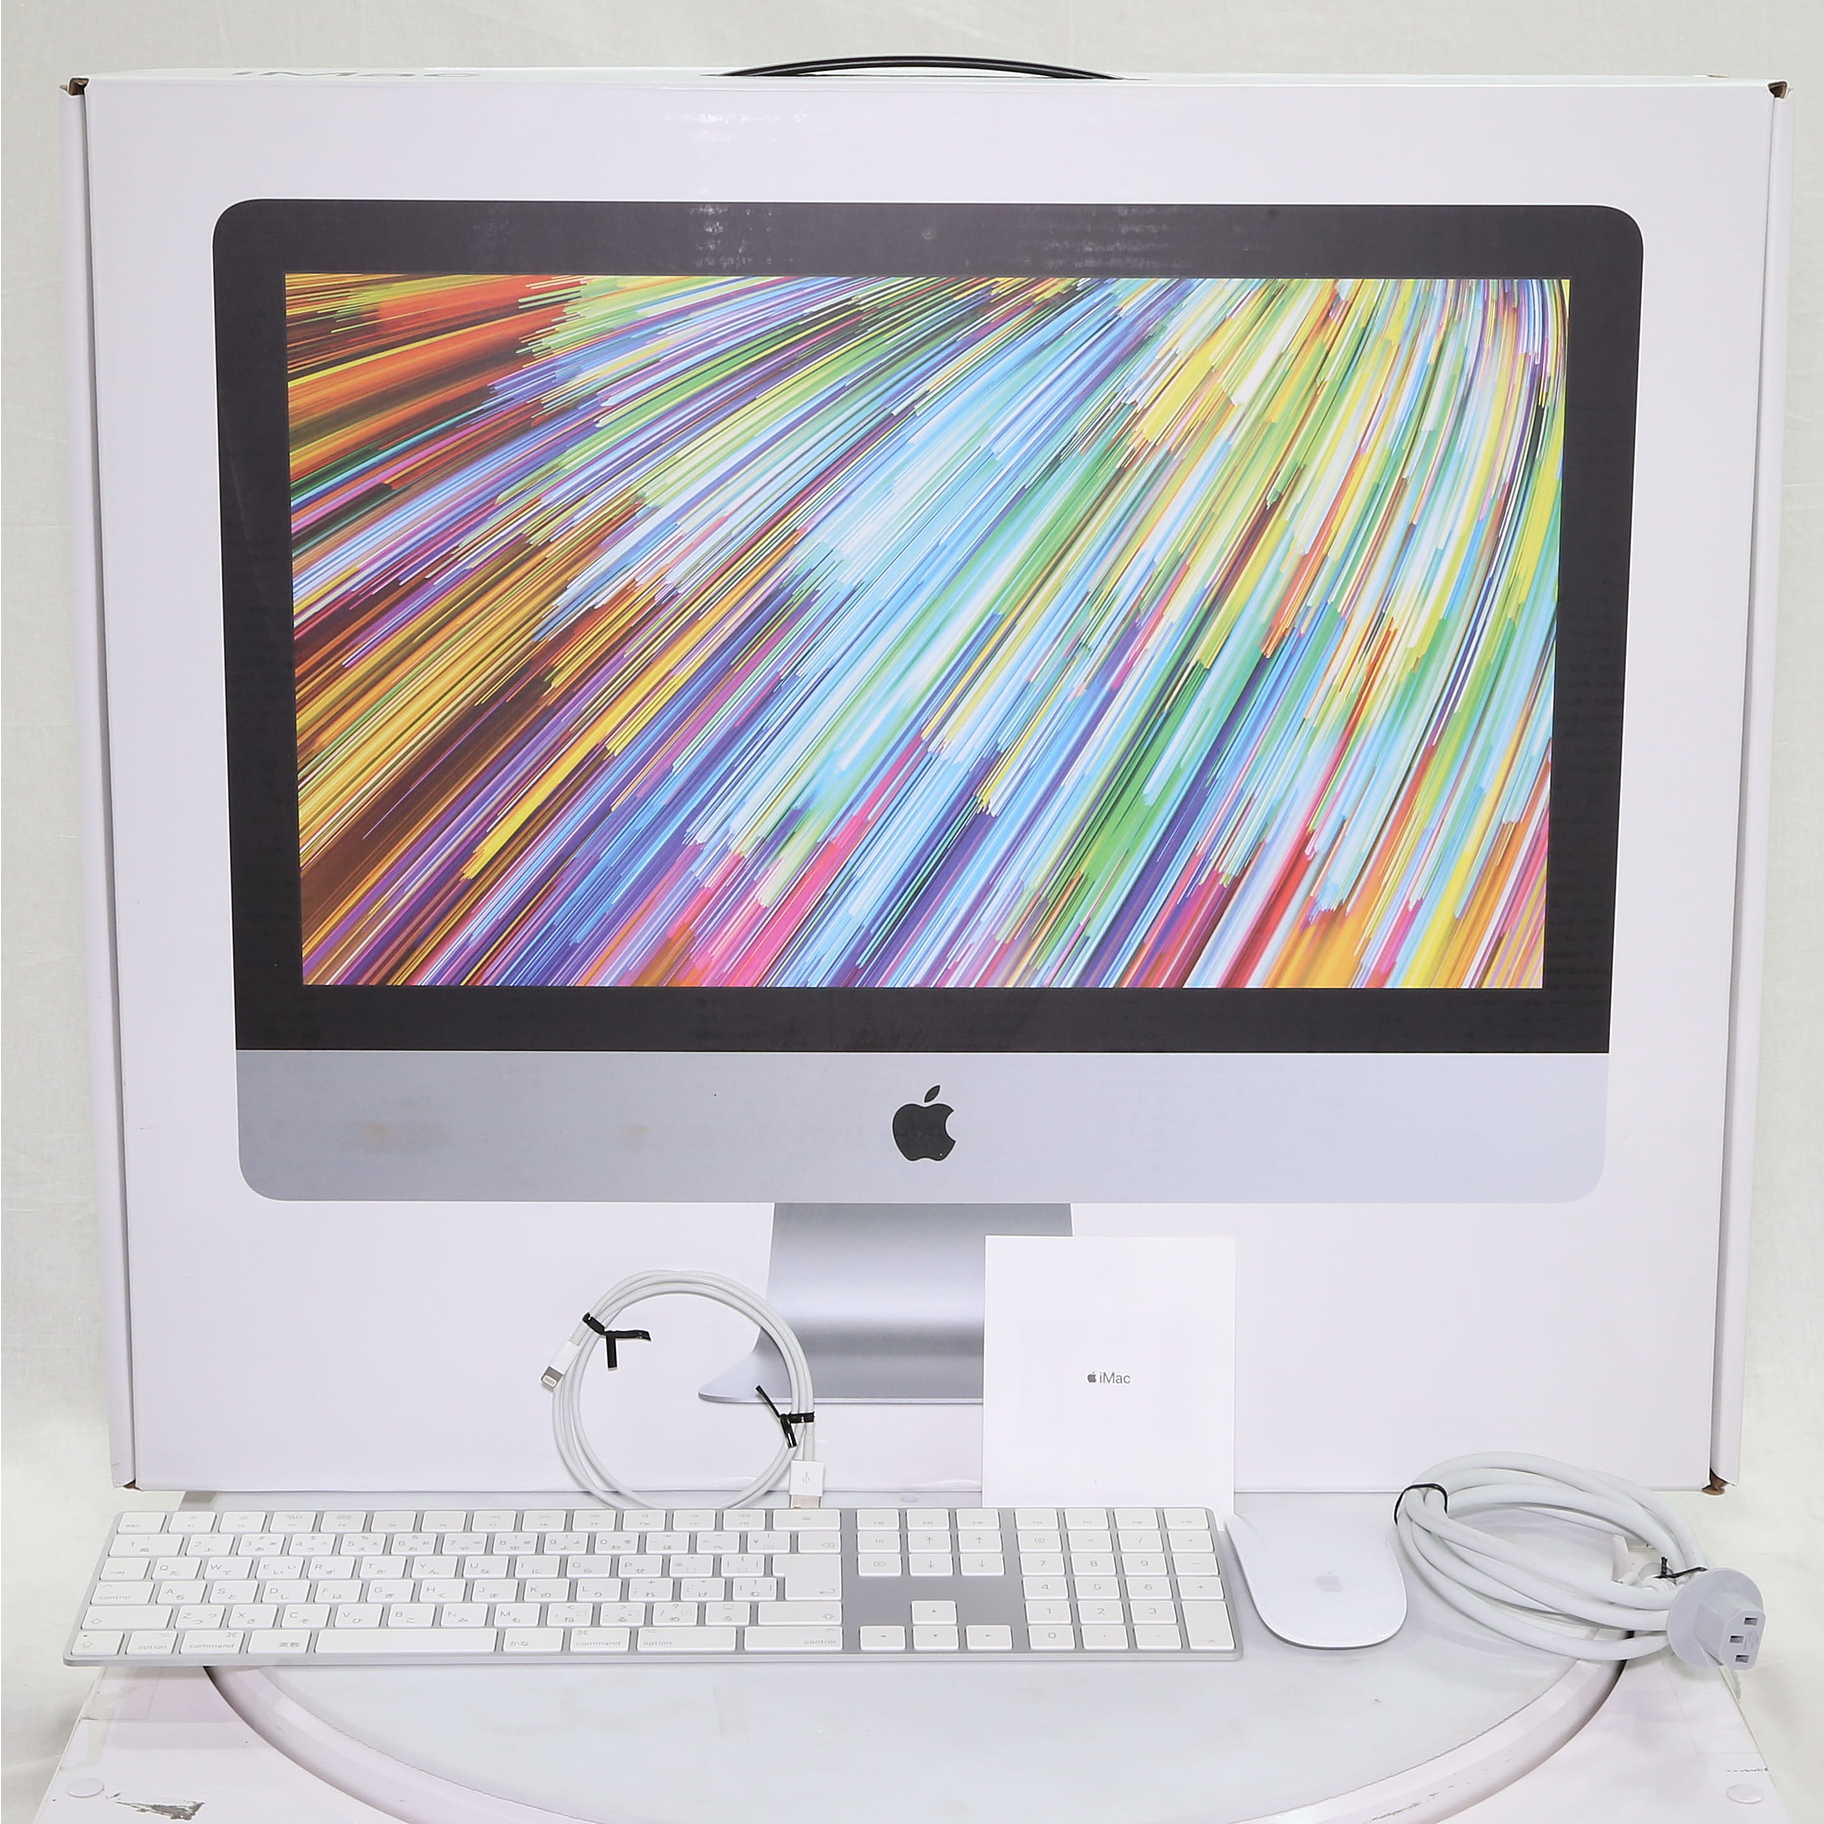 中古)Apple iMac 21.5-inch Mid 2017 MMQA2J A Core_i5 2.3GHz 16GB 